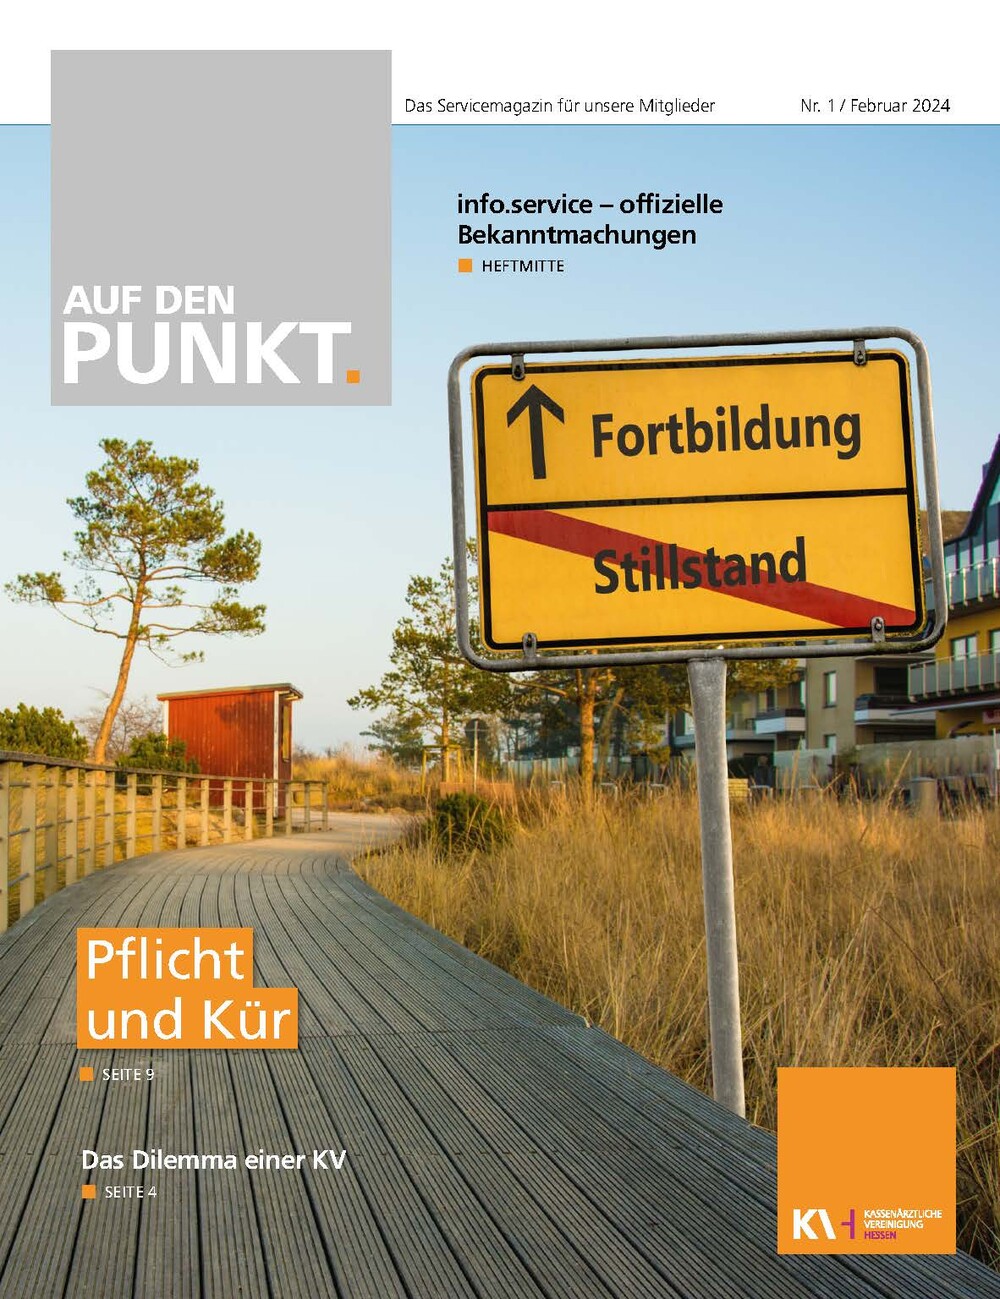 Titelseite der neuesten Ausgabe des Mitgliedermagazins der KVH Auf den PUNKT. 1/2024. Zu sehen ein Ortsschild mit Fortbildung oben und durchgestrichen Stillstand unten vor einer Landschaft mit Häusern.